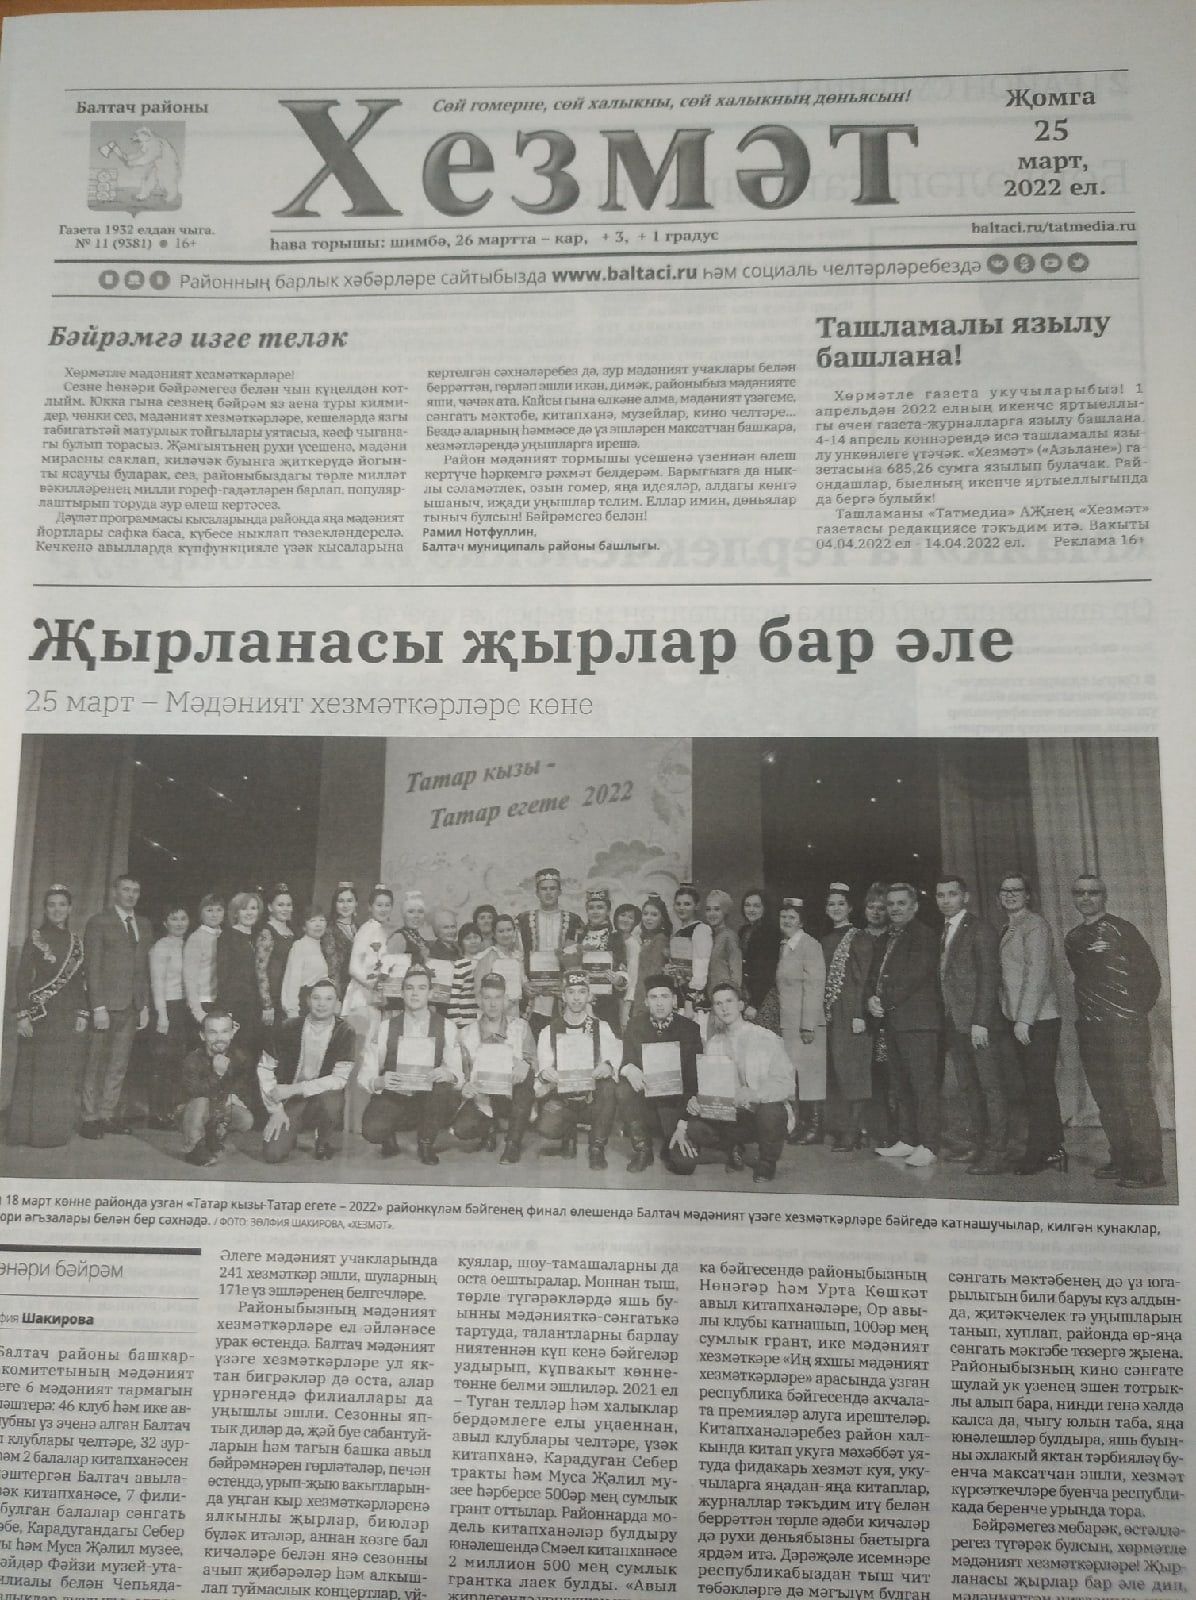 Газетаның 11нче санында (25 март, 2022 ел) чыгарылган белдерүләр һәм рекламалар